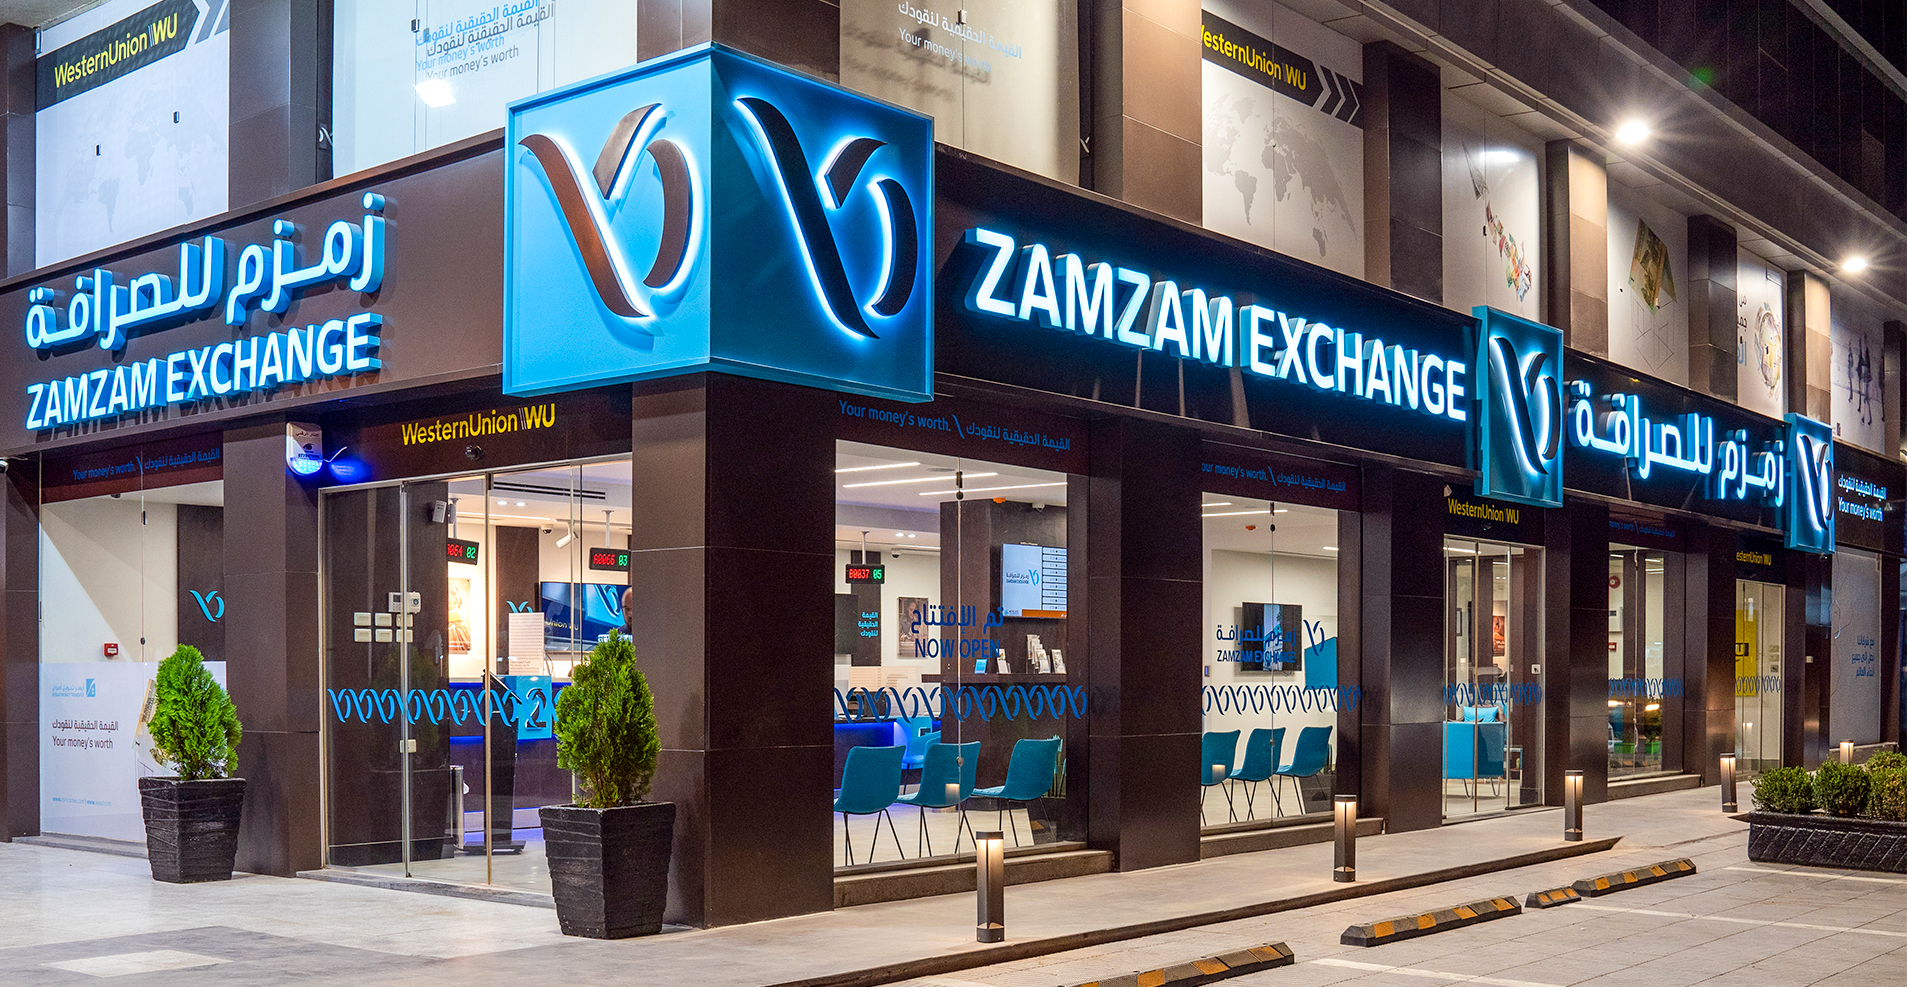 About Zamzam  zamzam exchange